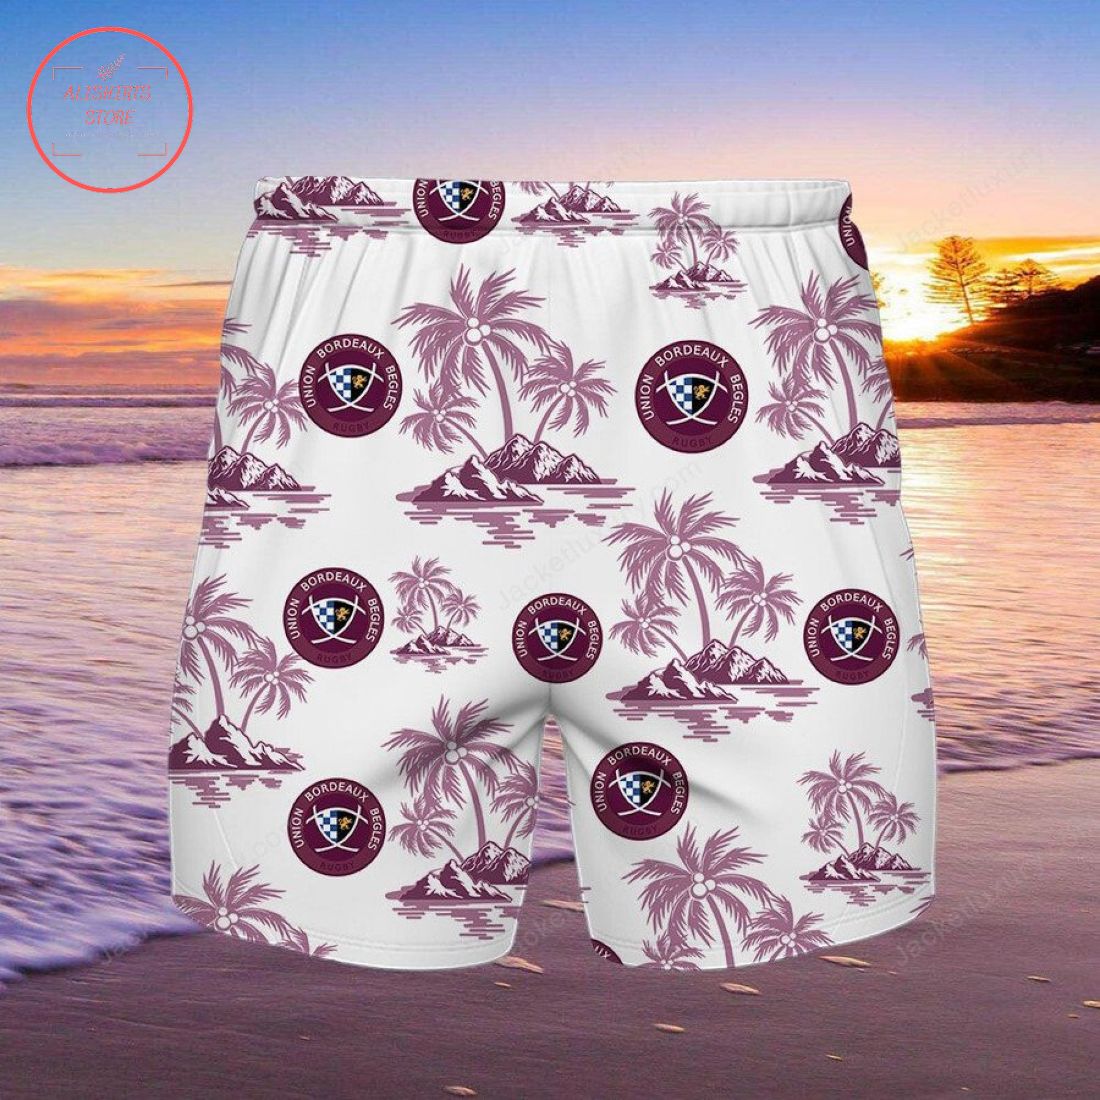 Union Bordeaux Begles Hawaiian Shirt and Beach Shorts